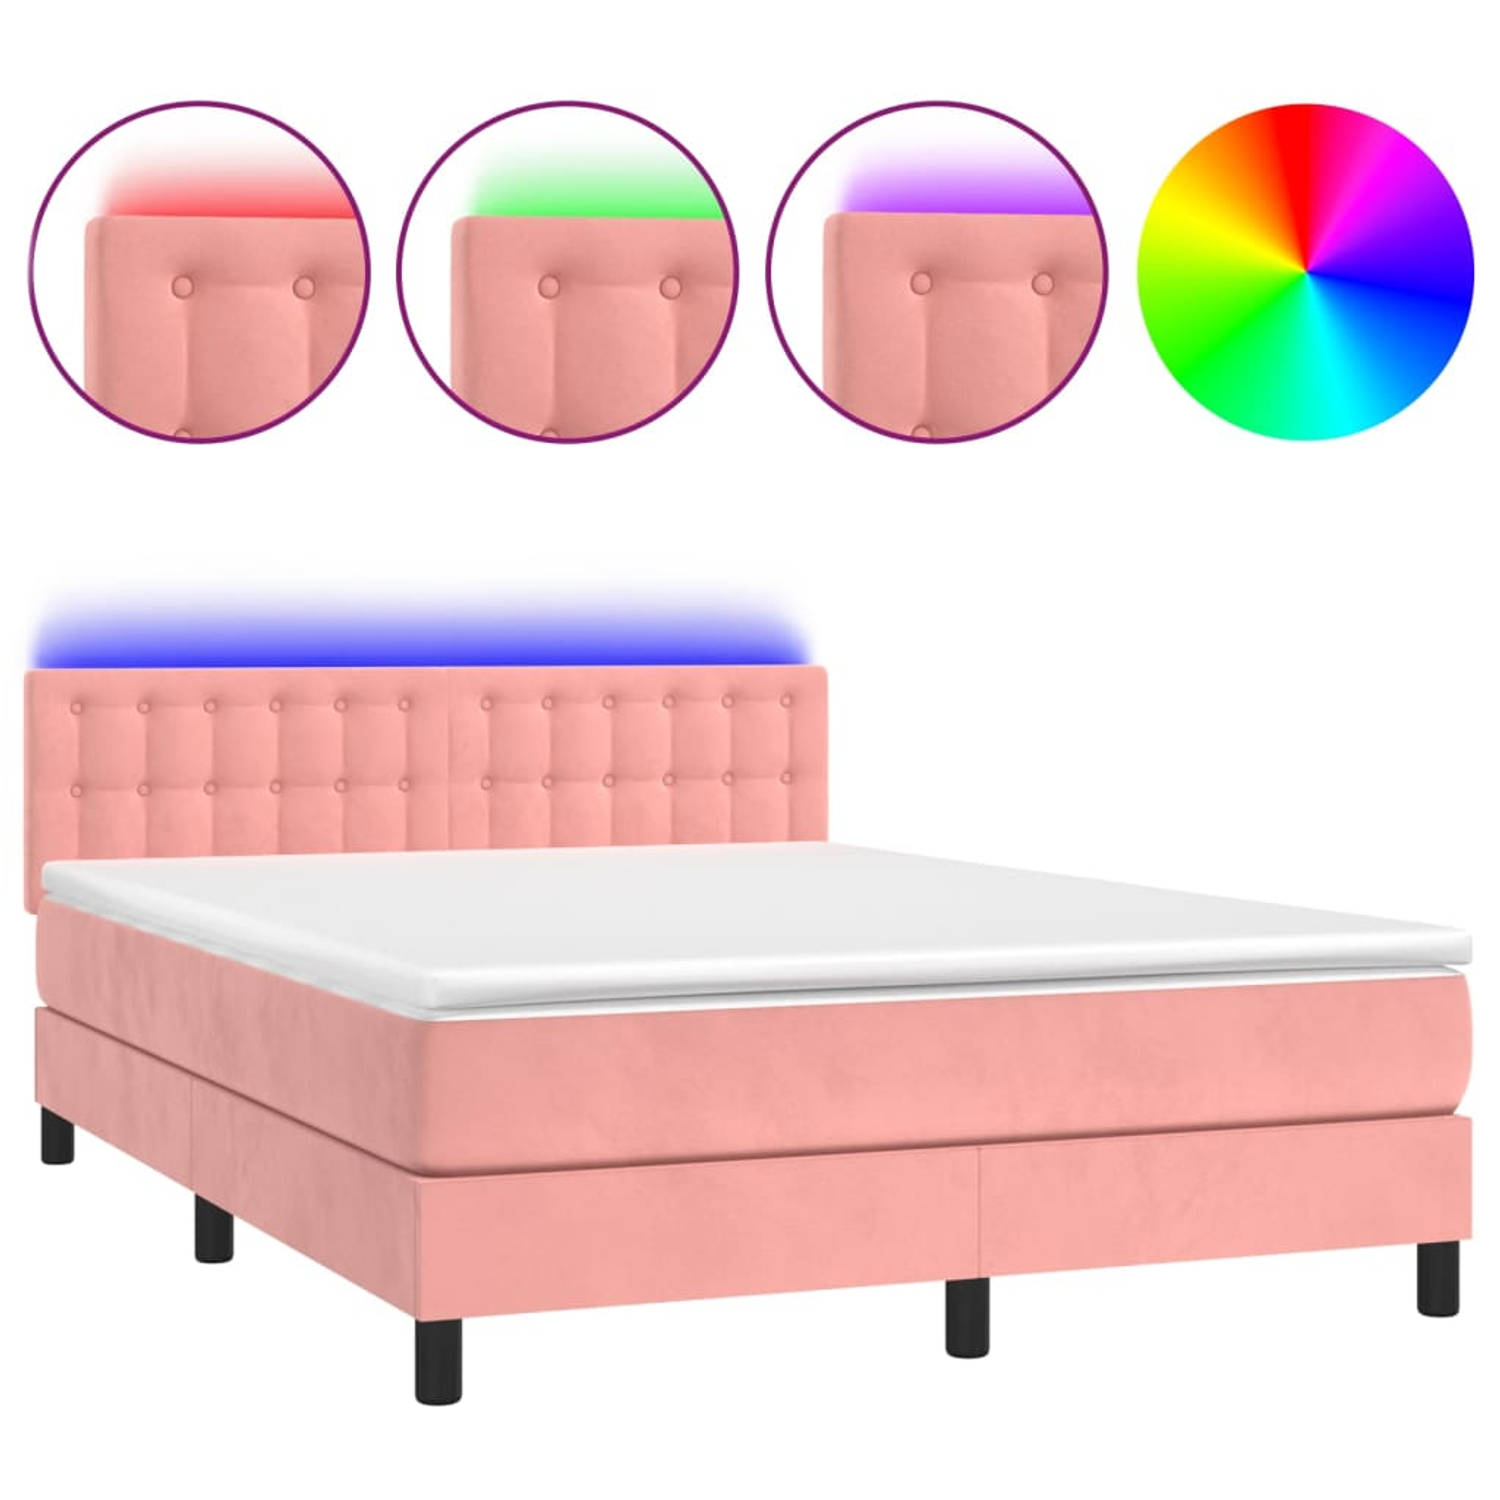 The Living Store Boxspring - Bedframe met verstelbaar hoofdbord - 193 x 144 cm - Zacht fluweel roze - Pocketvering matras - Huidvriendelijk topmatras - Kleurrijke LED-verlichting